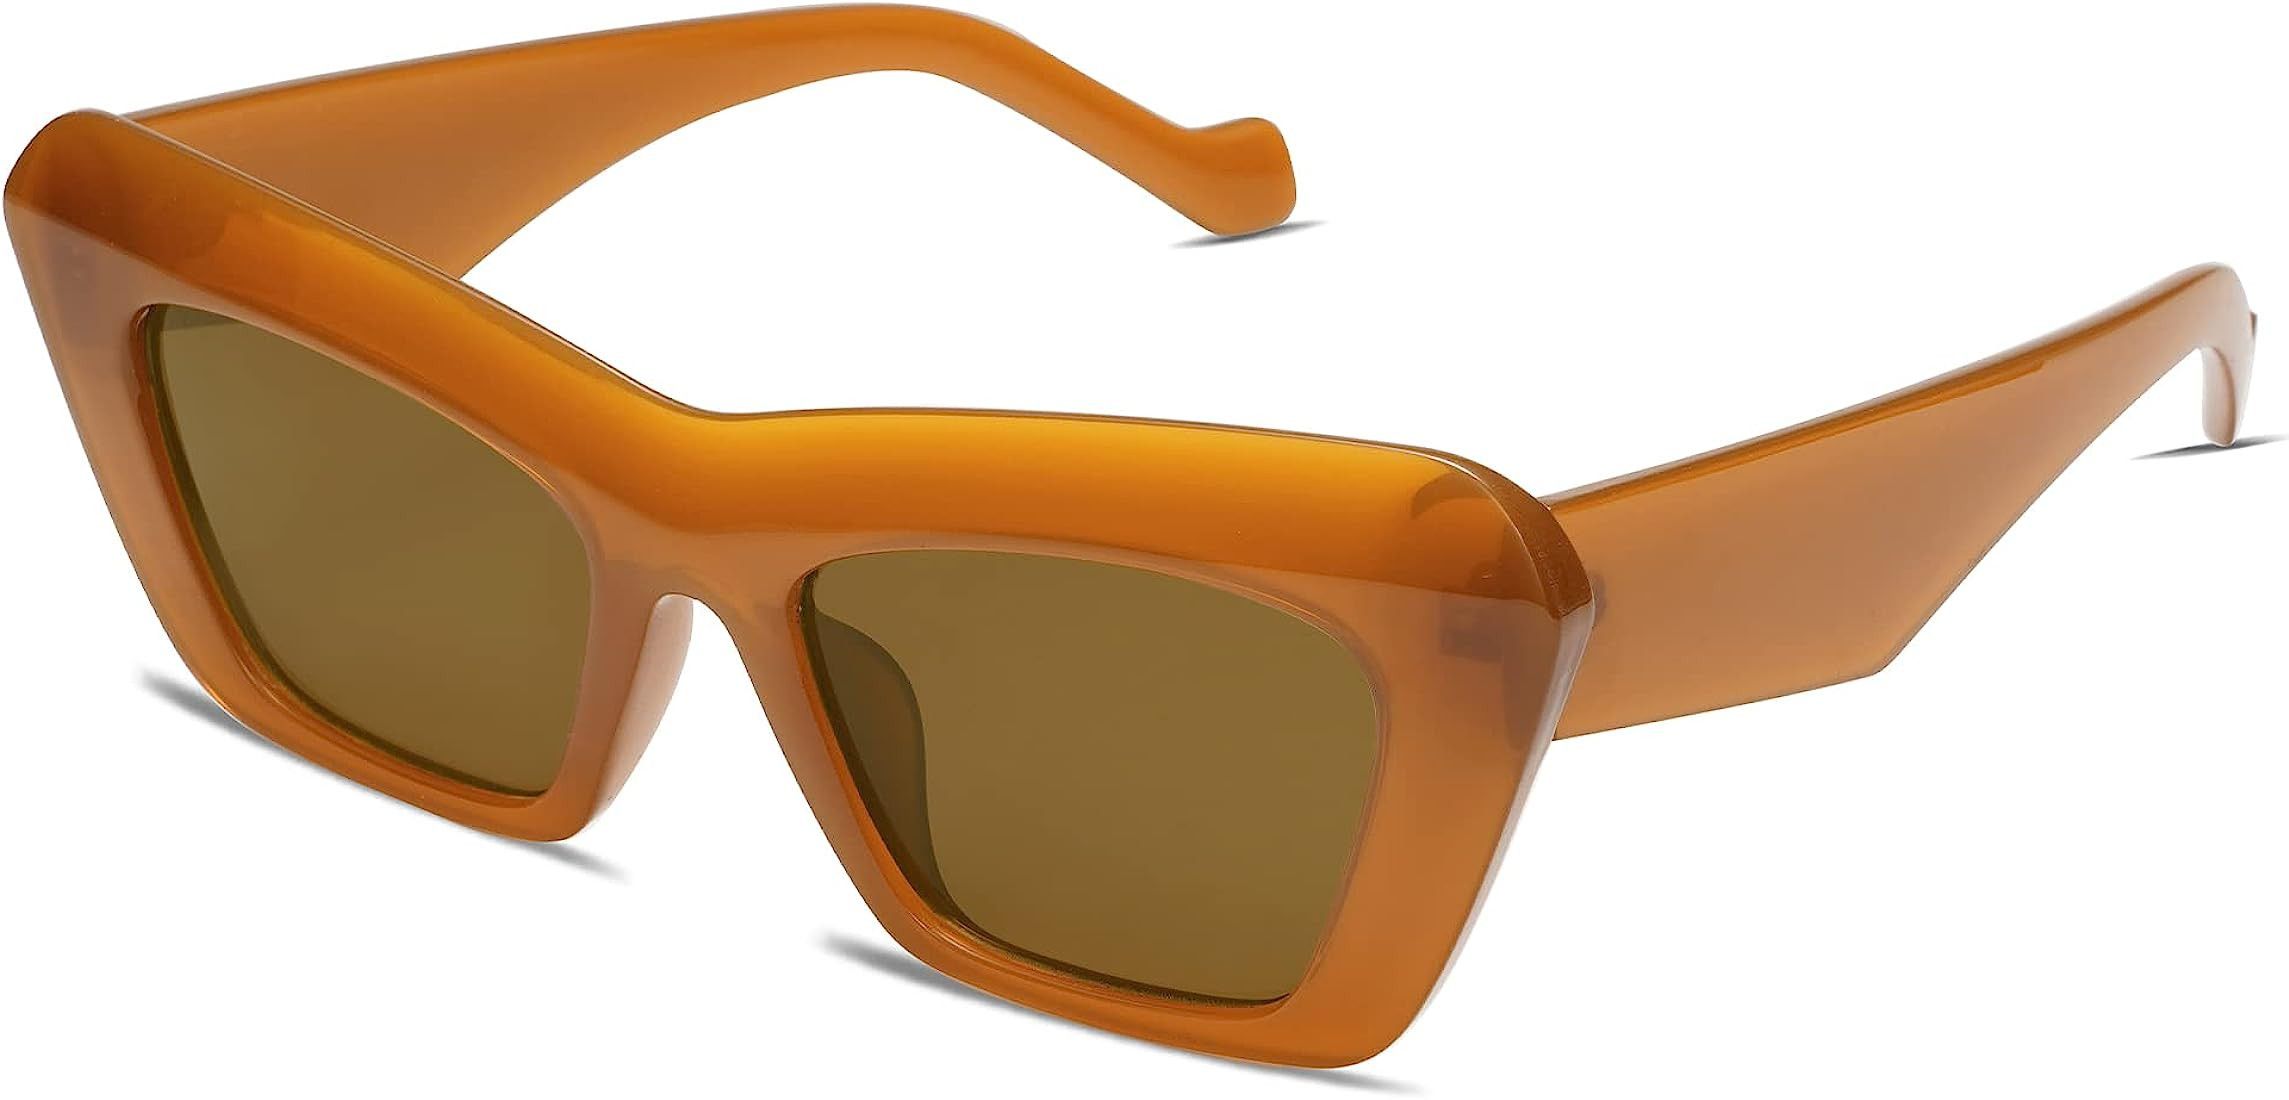 VANLINKER Vintage Oversized Square Cat Eye Sunglasses for Women Retro Cateye Thick Frame Trendy S... | Amazon (US)